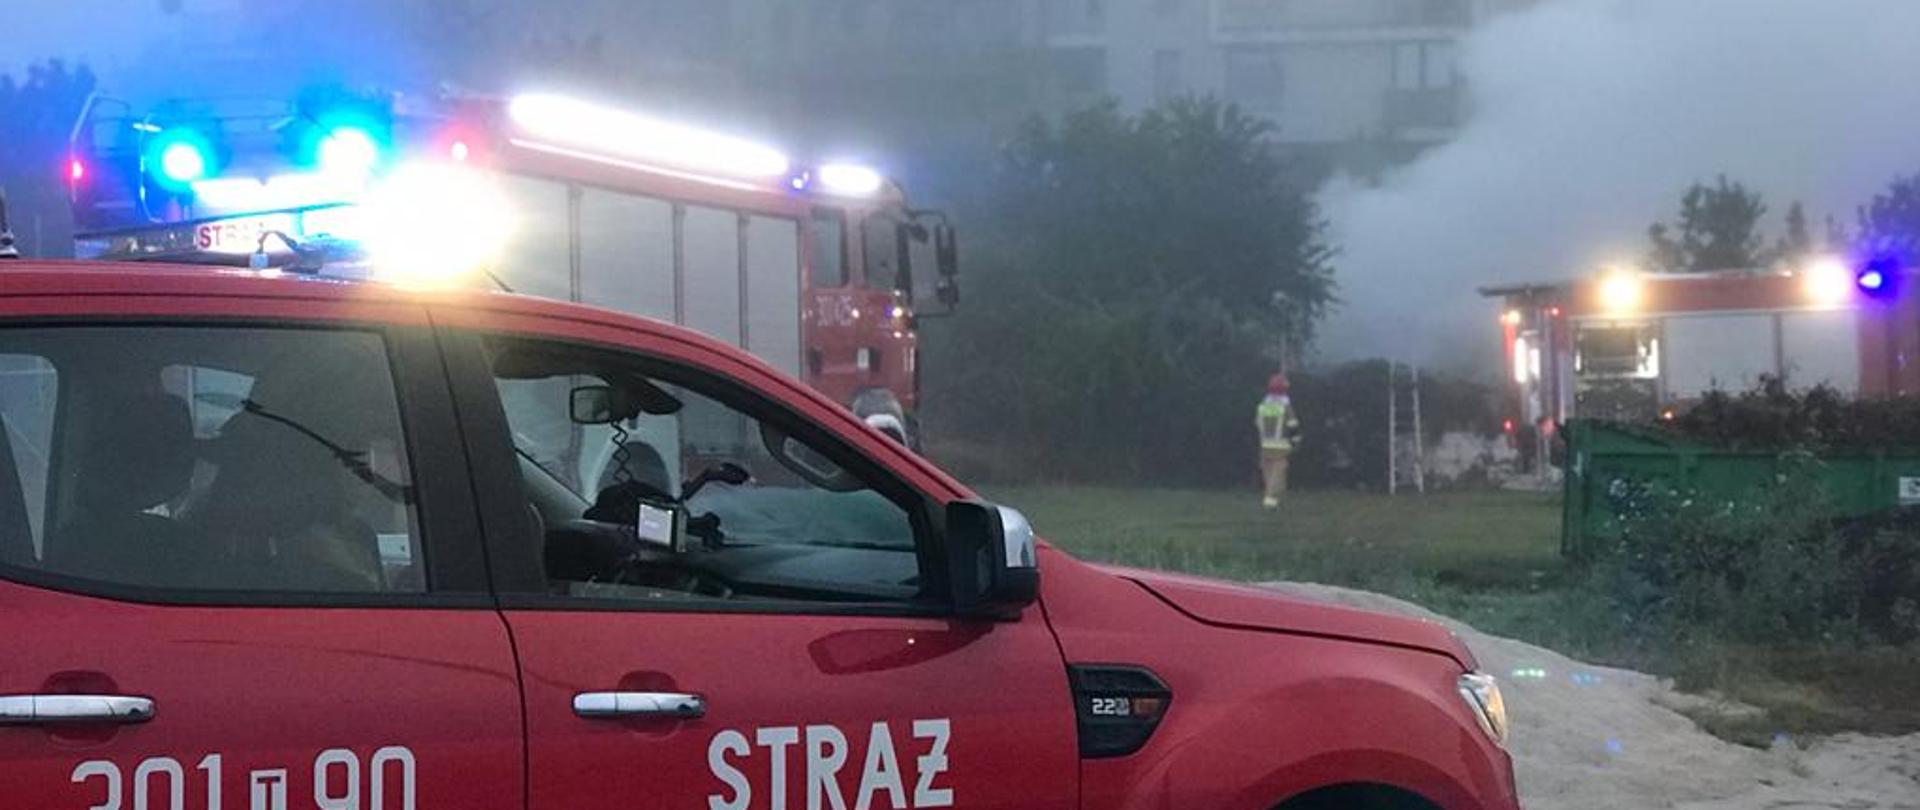 Na pierwszym planie stoi samochód pożarniczy a za nim drugi. Po prawej stronie widać unoszący się z pożaru dym a obok kolejny wóz strażacki.